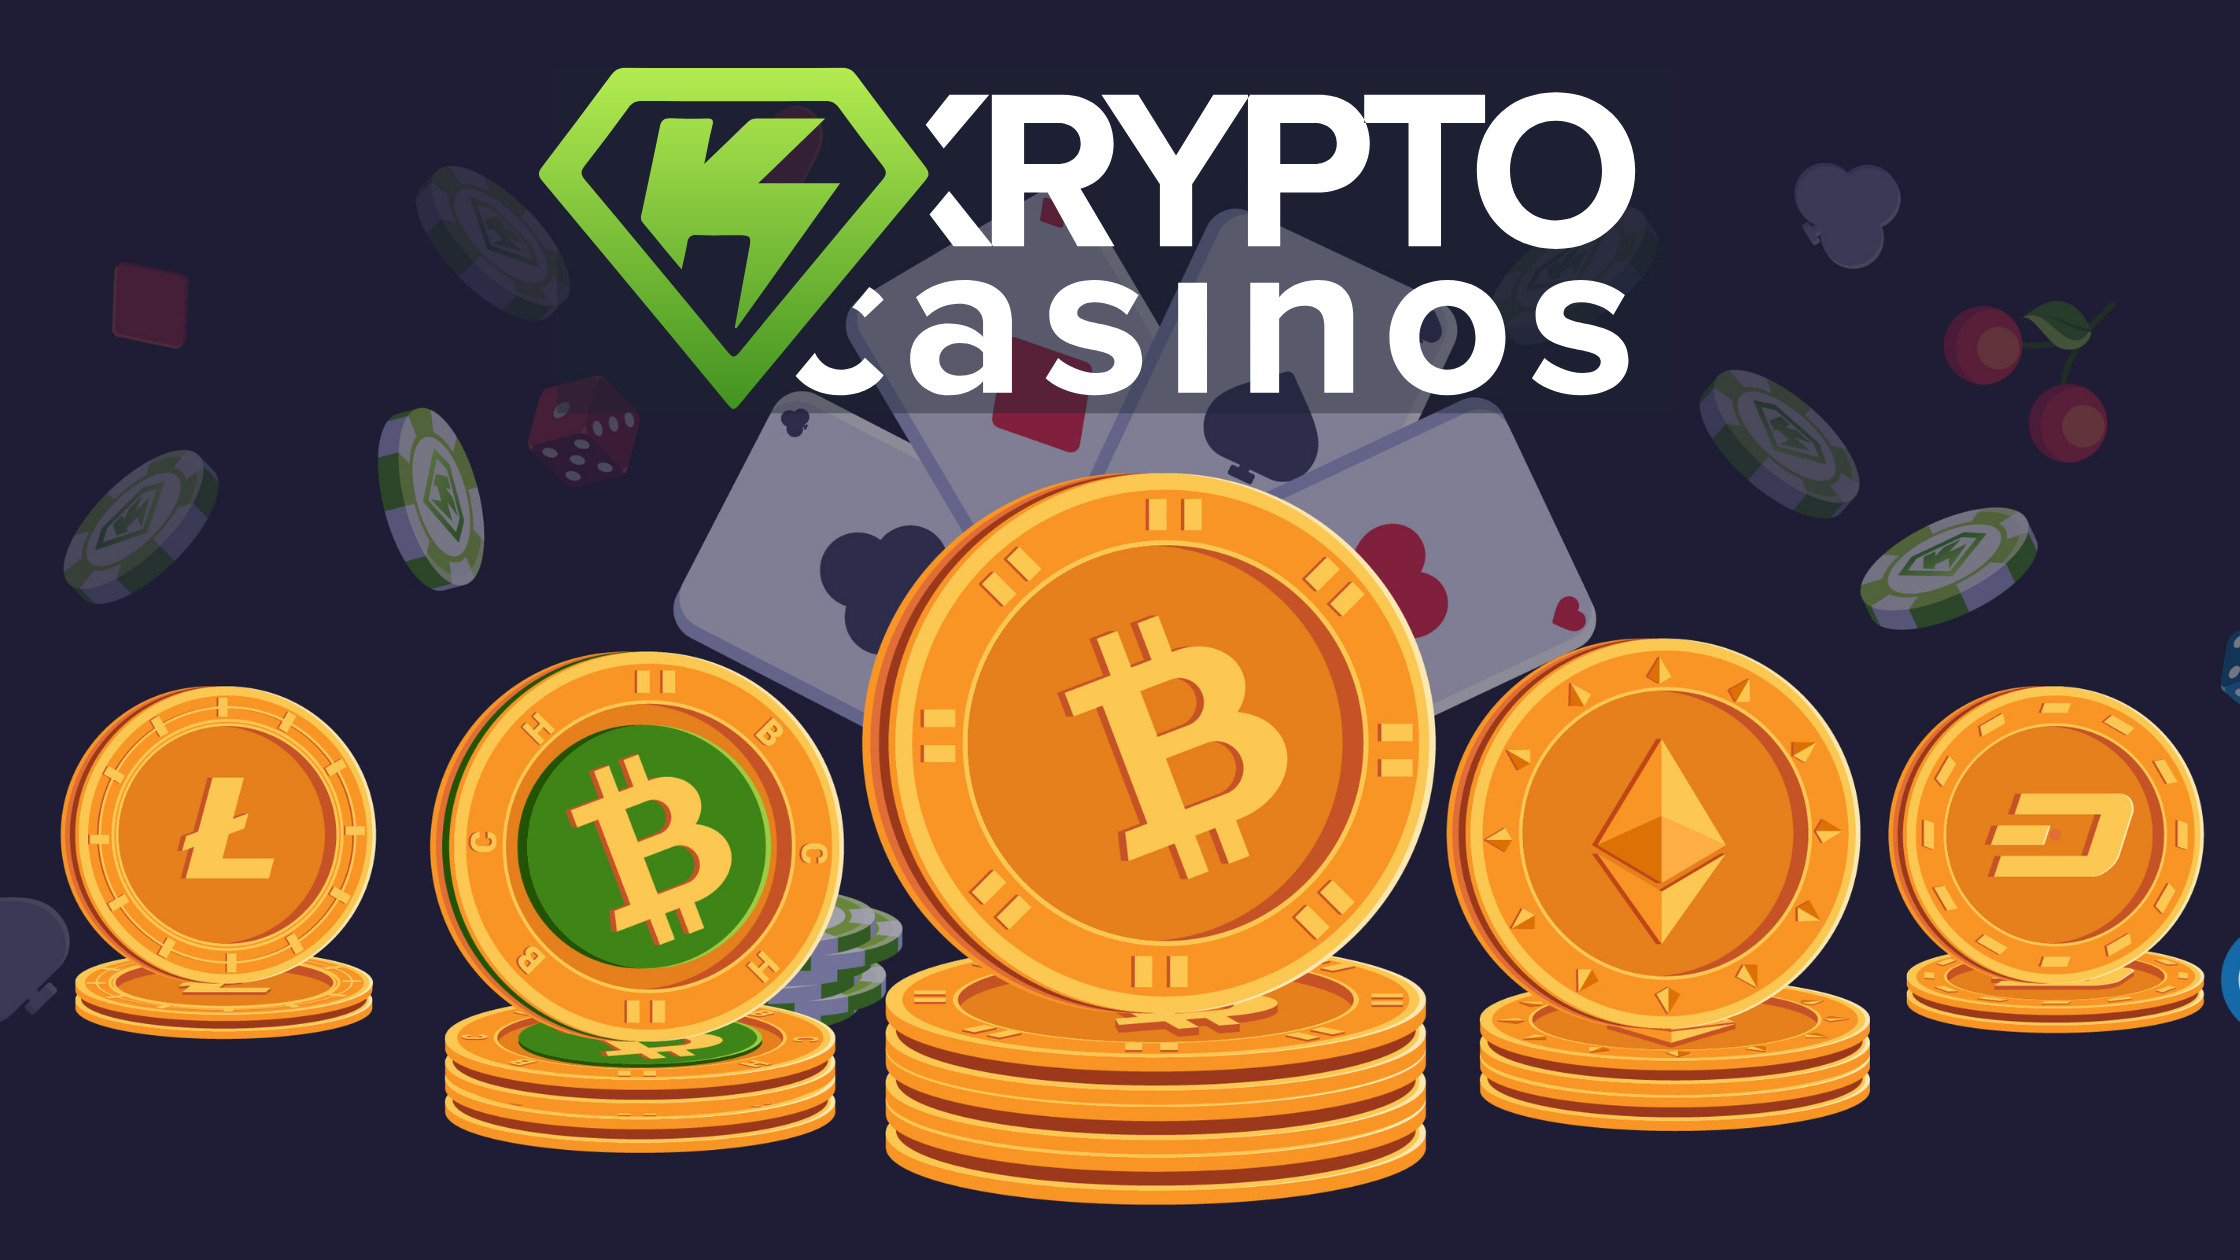 Jetzt können Sie Ihr beste Bitcoin Online Casinos sicher erstellen lassen